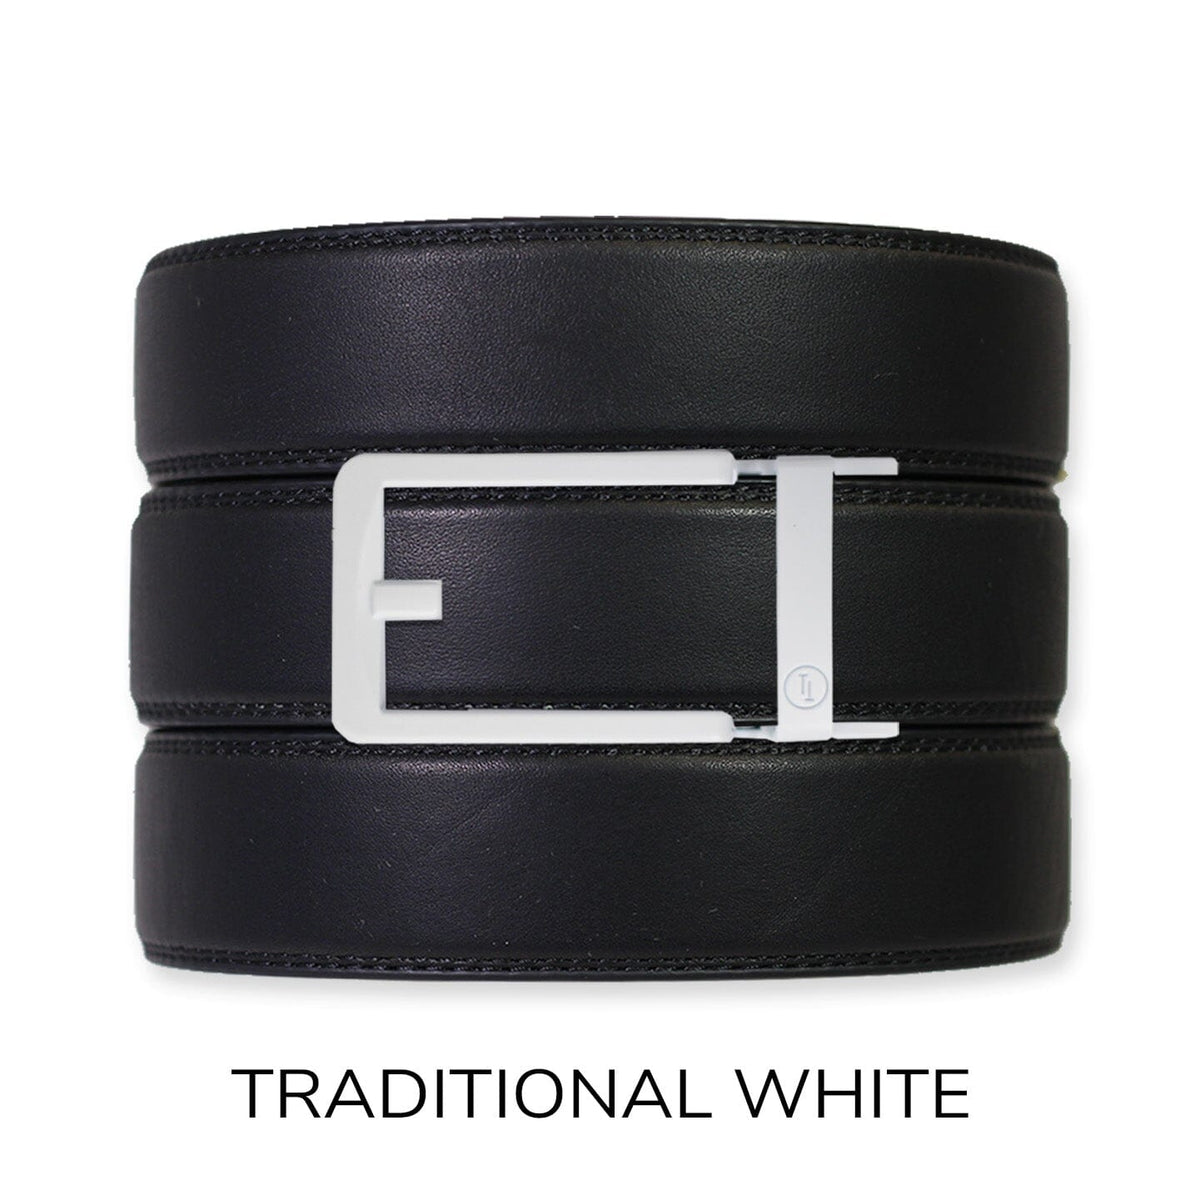 16 Hermes belt ideas  hermes belt, fashion, how to wear